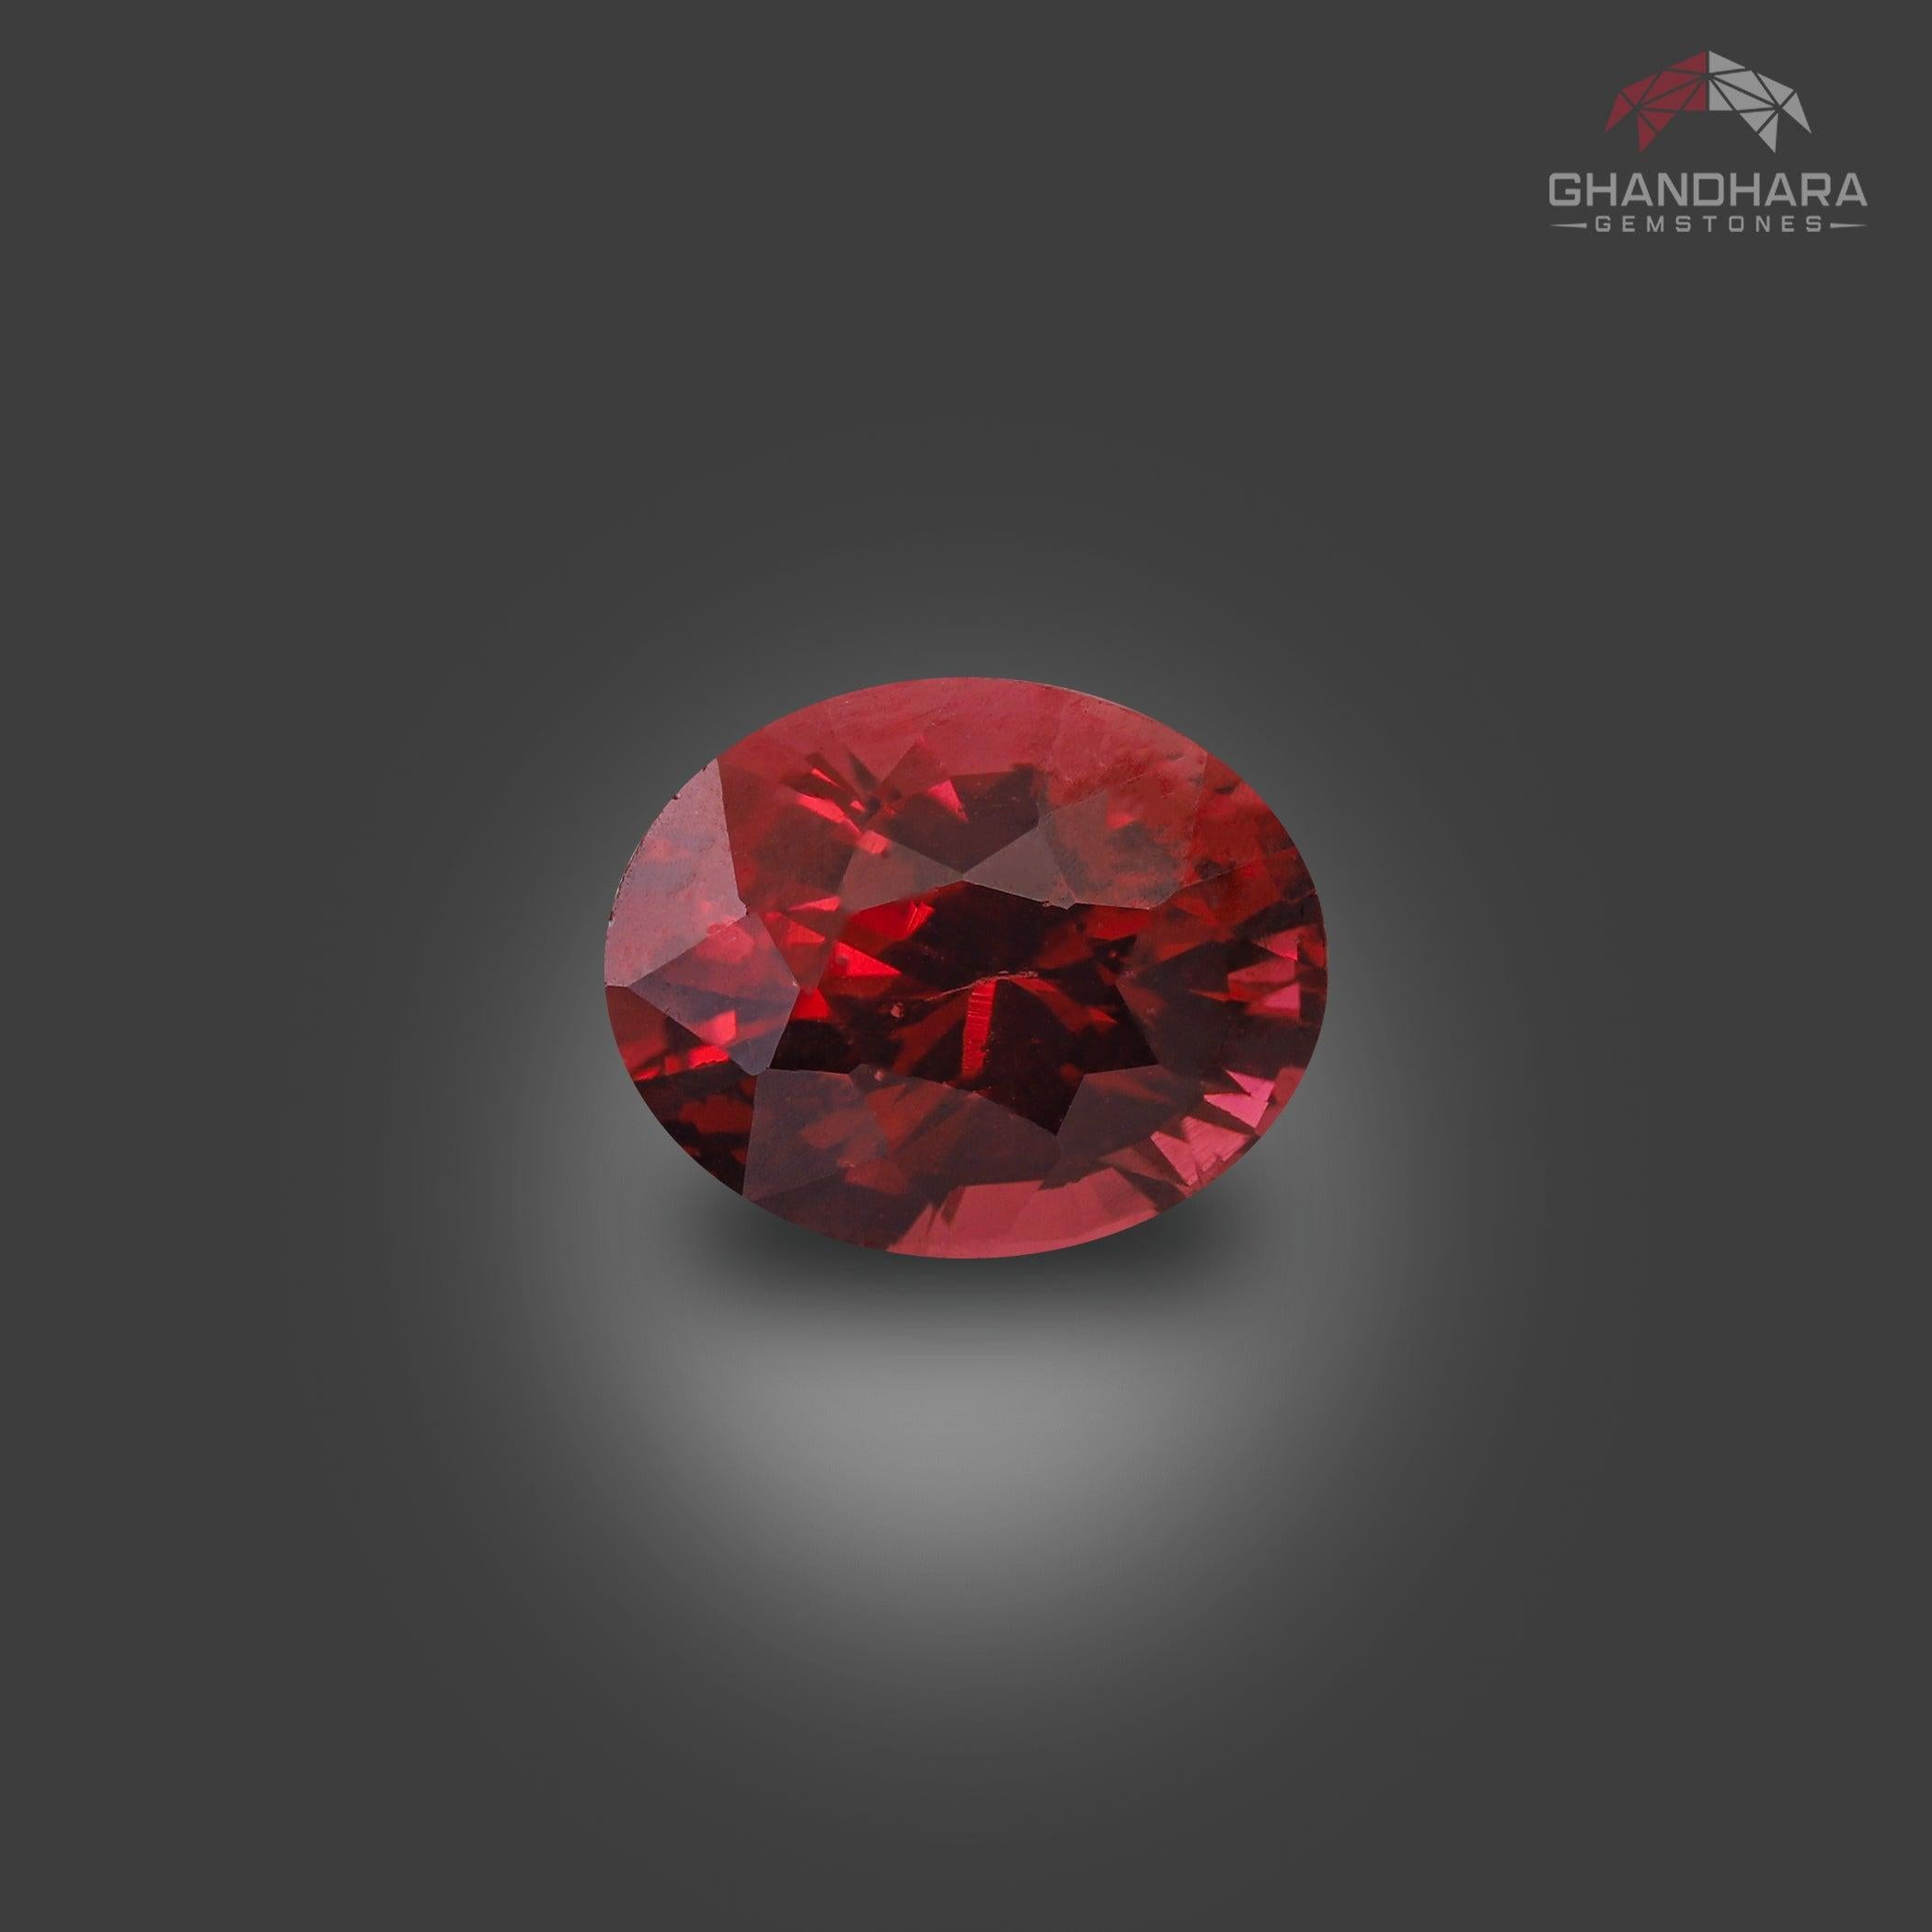 Tourmaline Rubelite Fancy Cut de 2.20 carats provenant du Nigéria, de forme ovale, d'une couleur rouge incroyable. Une grande brillance. Cette pierre précieuse est de clarté Vvs.

Informations sur le produit
TYPE DE GEMSTONE :	Tourmaline Rubelite